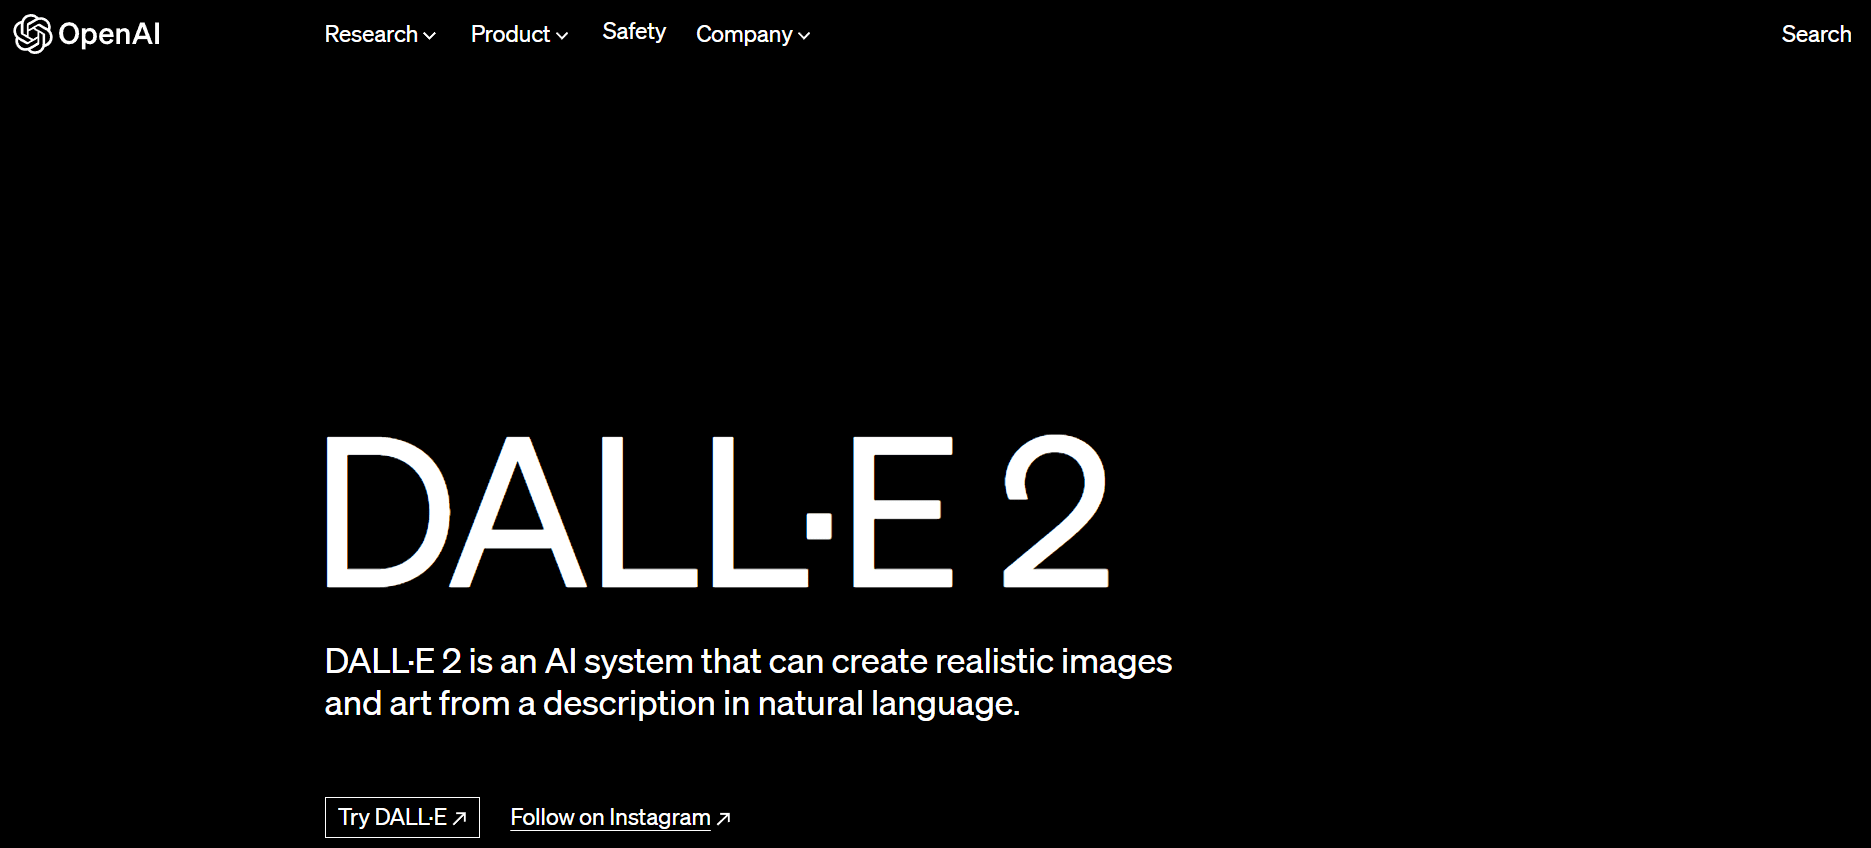 DALLE-2 